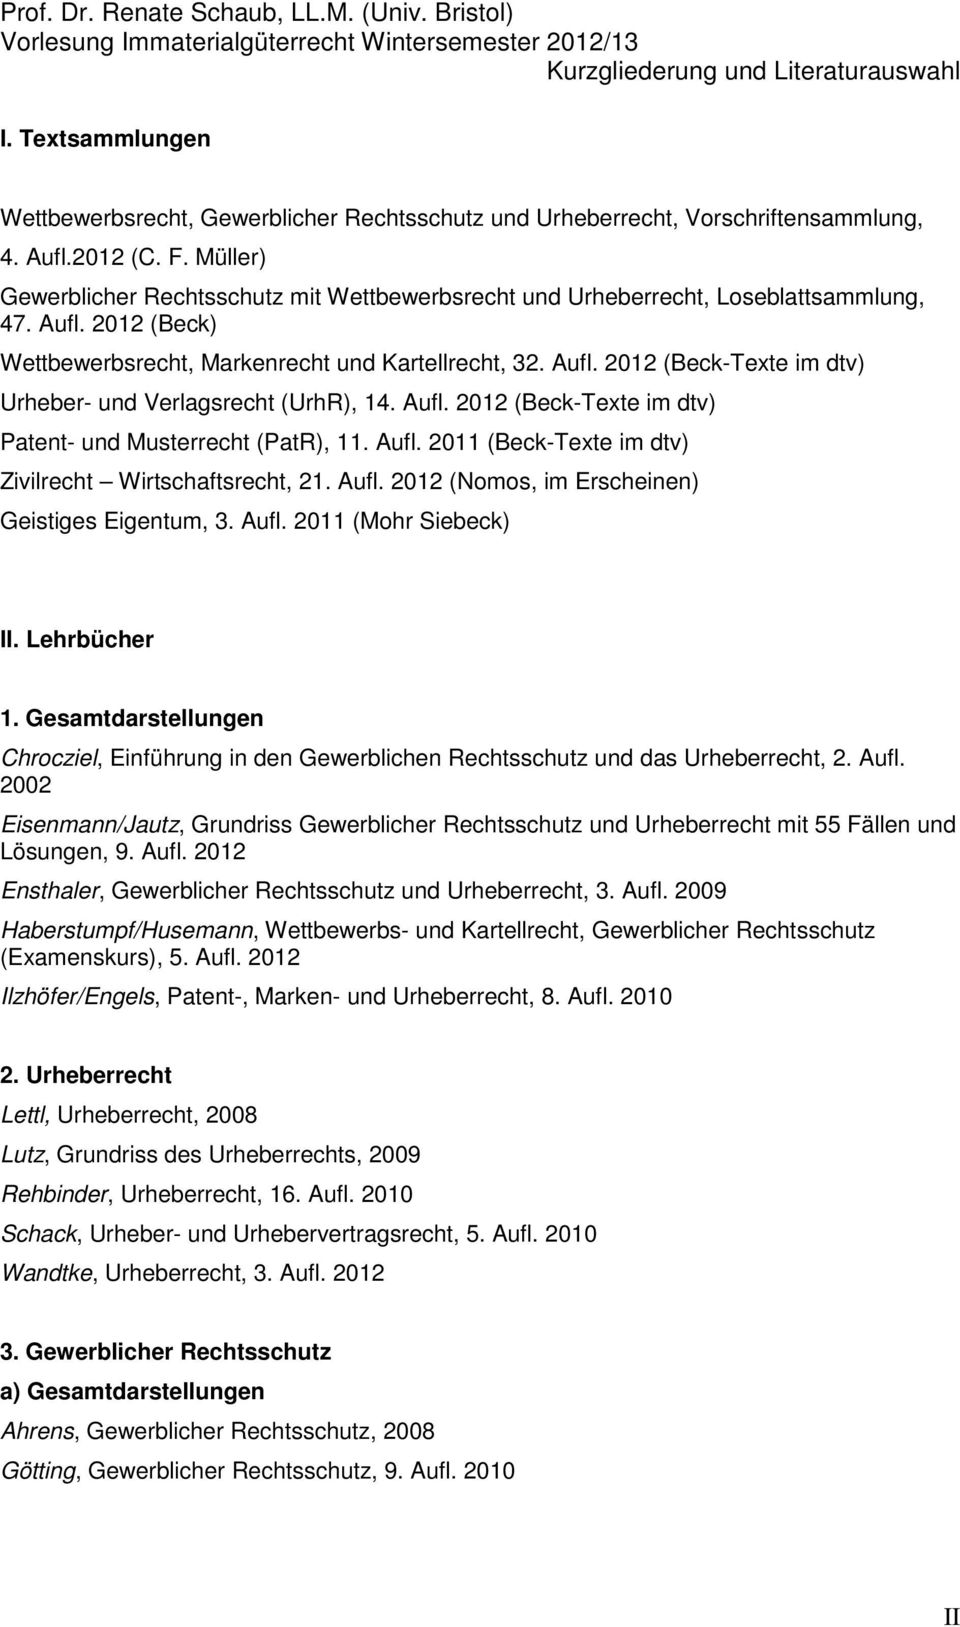 Aufl. 2012 (Beck-Texte im dtv) Patent- und Musterrecht (PatR), 11. Aufl. 2011 (Beck-Texte im dtv) Zivilrecht Wirtschaftsrecht, 21. Aufl. 2012 (Nomos, im Erscheinen) Geistiges Eigentum, 3. Aufl. 2011 (Mohr Siebeck) II.